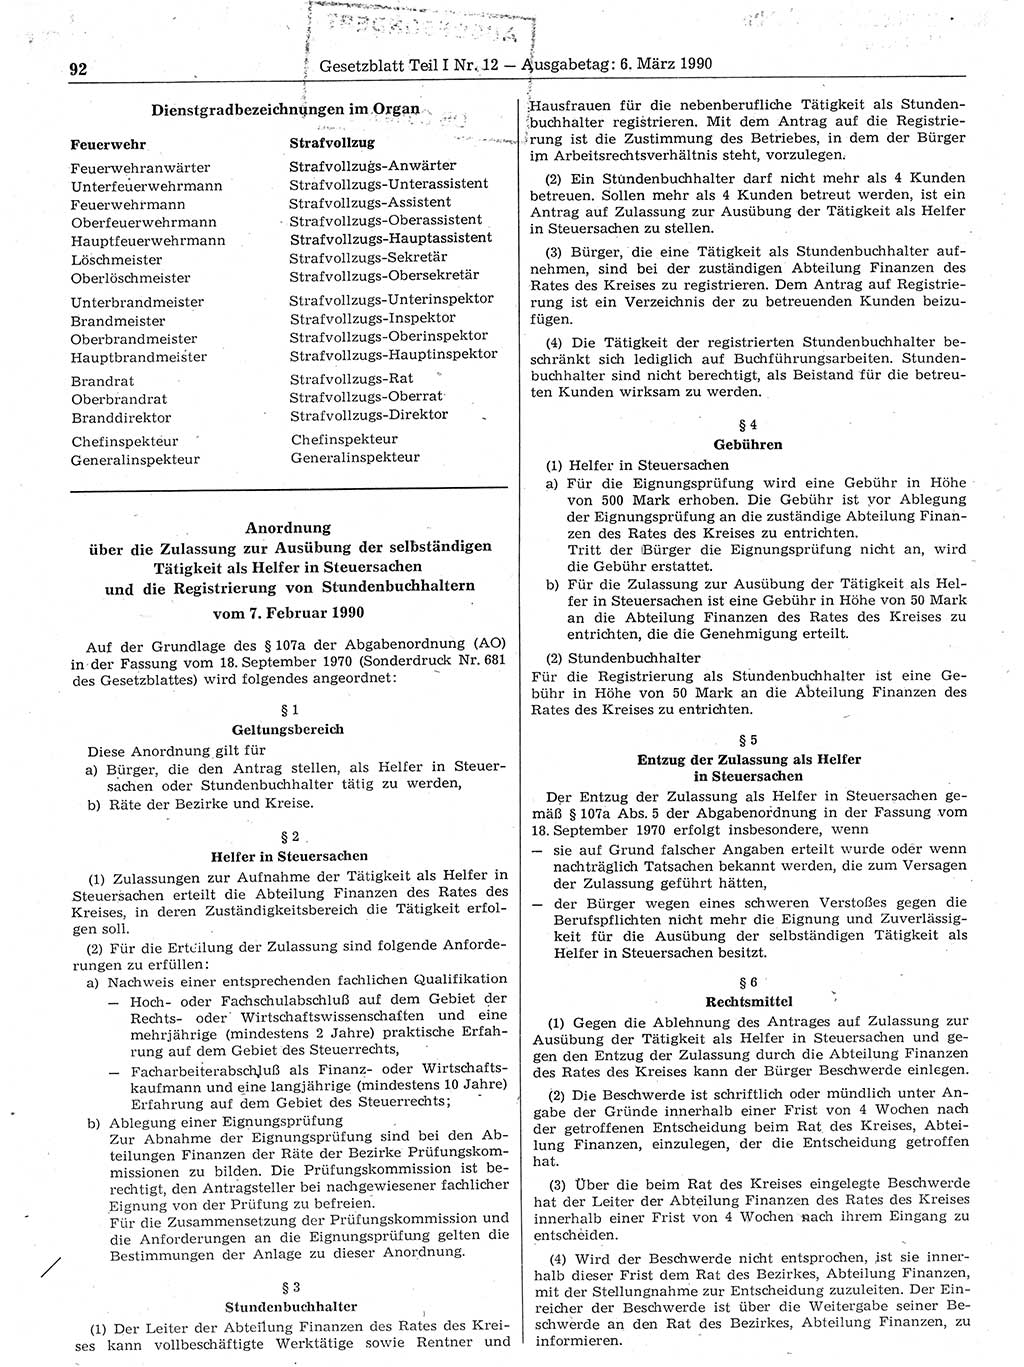 Gesetzblatt (GBl.) der Deutschen Demokratischen Republik (DDR) Teil Ⅰ 1990, Seite 92 (GBl. DDR Ⅰ 1990, S. 92)